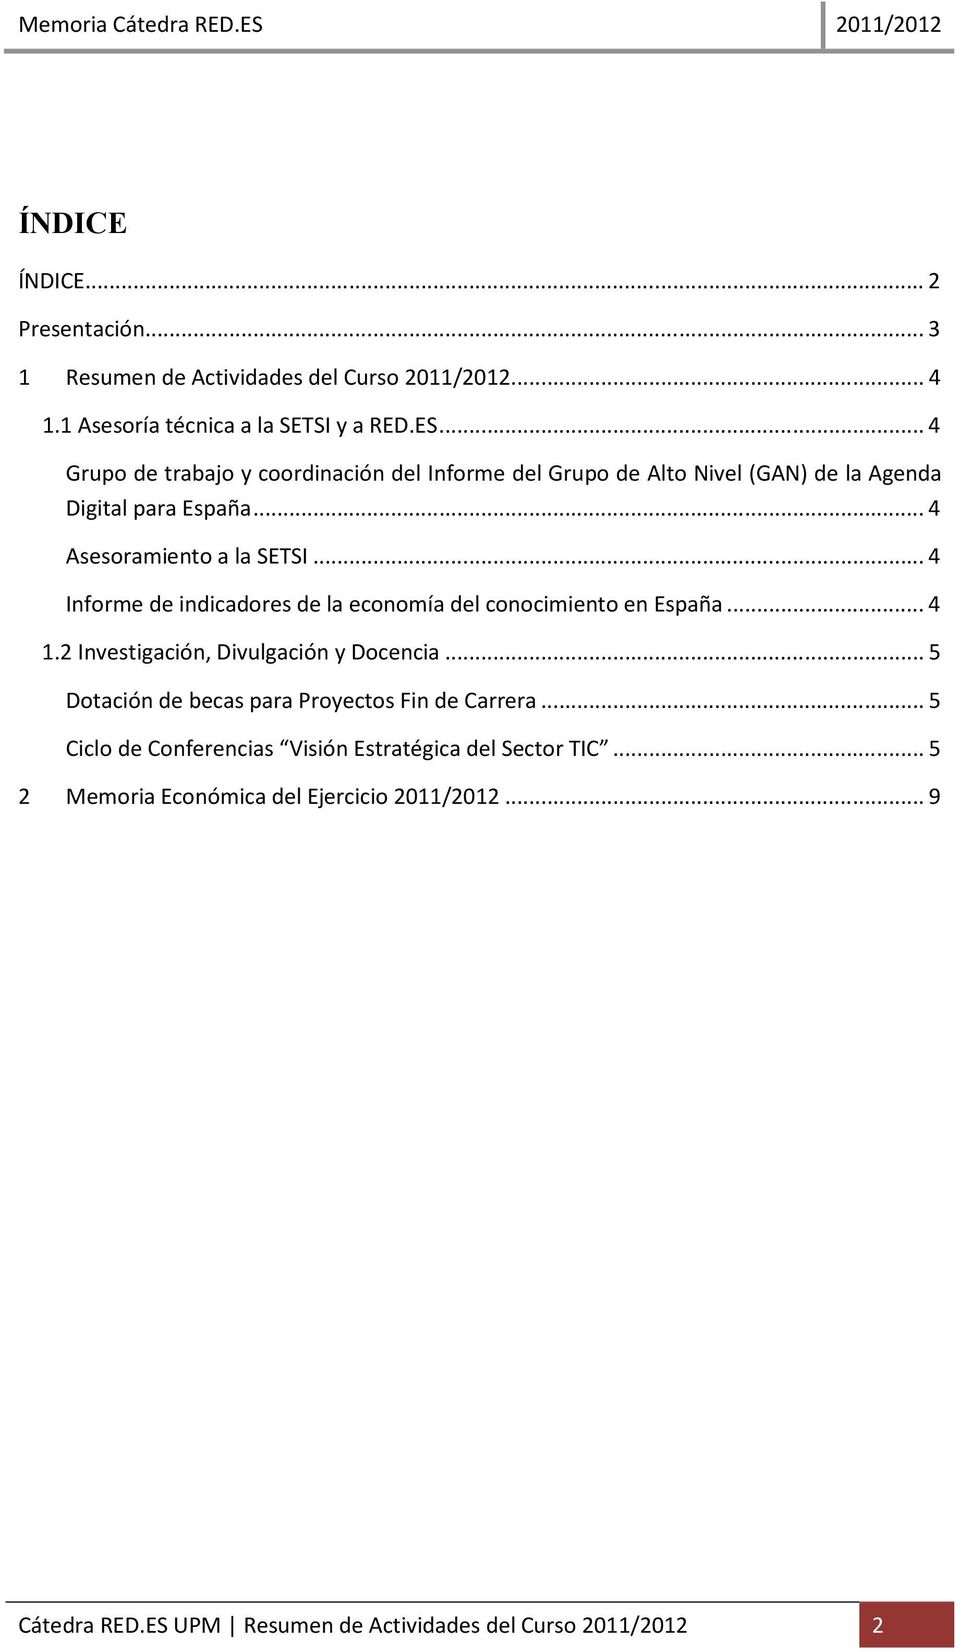 .. 4 Informe de indicadores de la economía del conocimiento en España... 4 1.2 Investigación, Divulgación y Docencia.